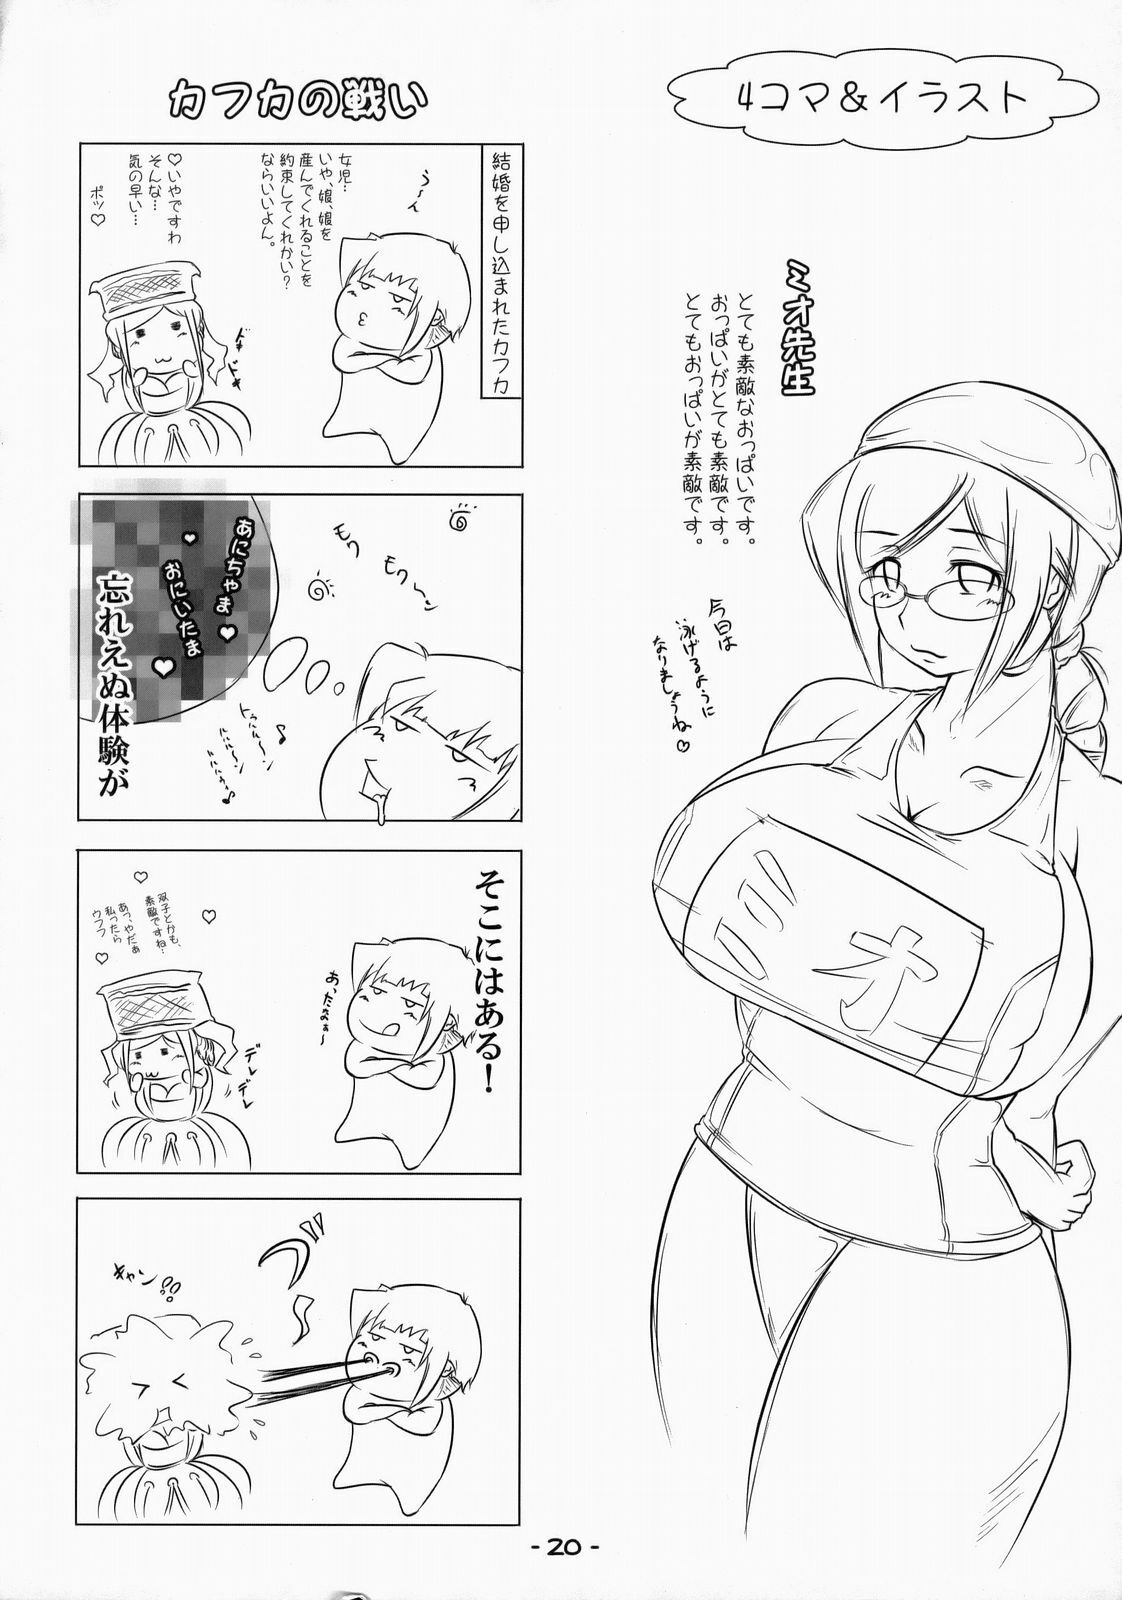 [eleven dice] Mio-friend- (Blue Dragon) page 19 full